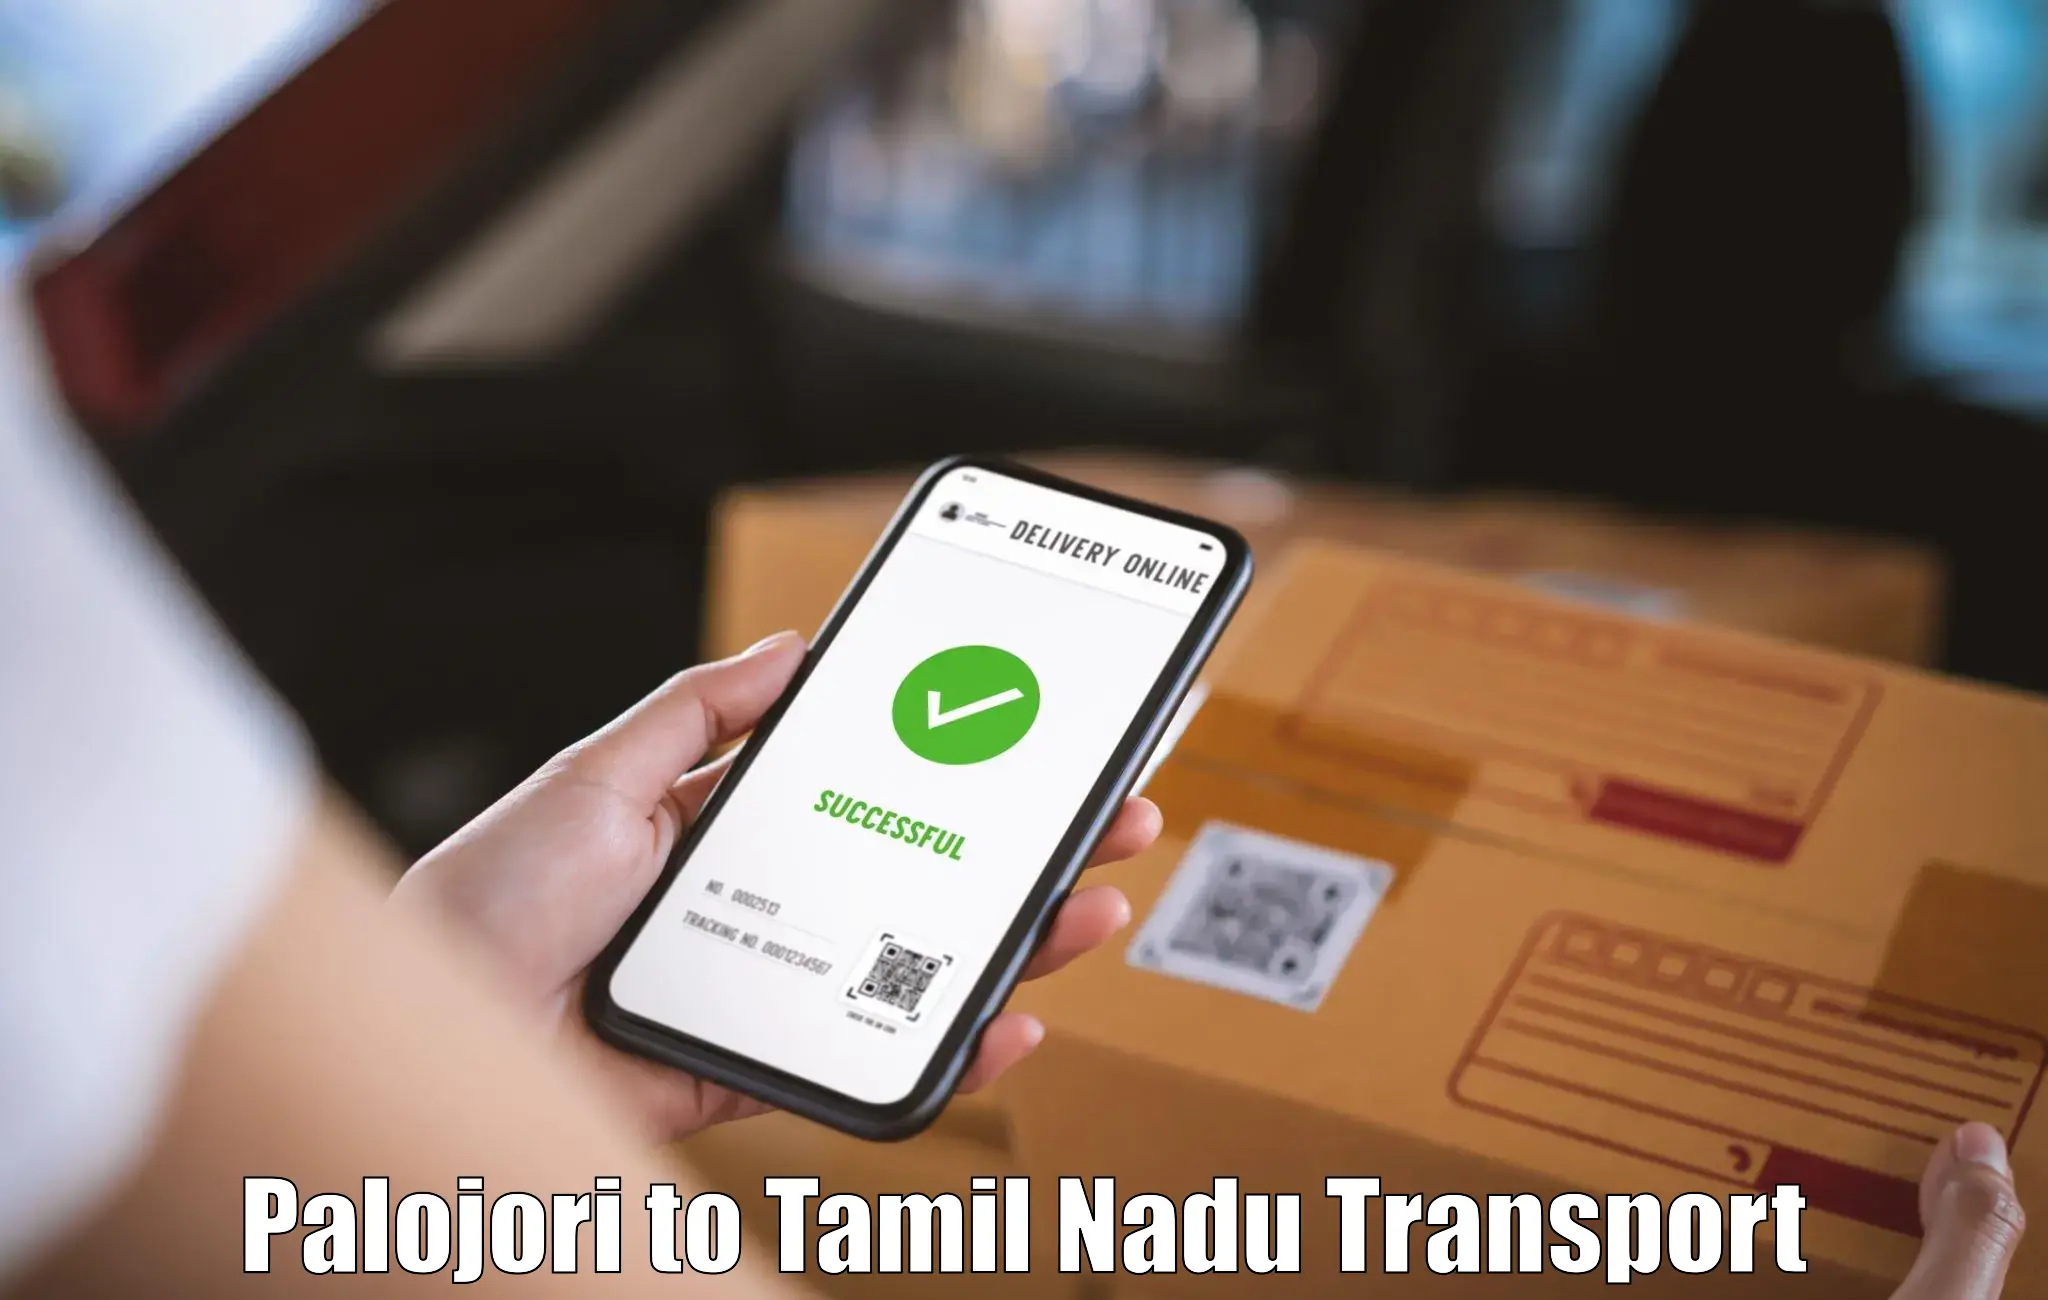 Door to door transport services in Palojori to Tamil Nadu